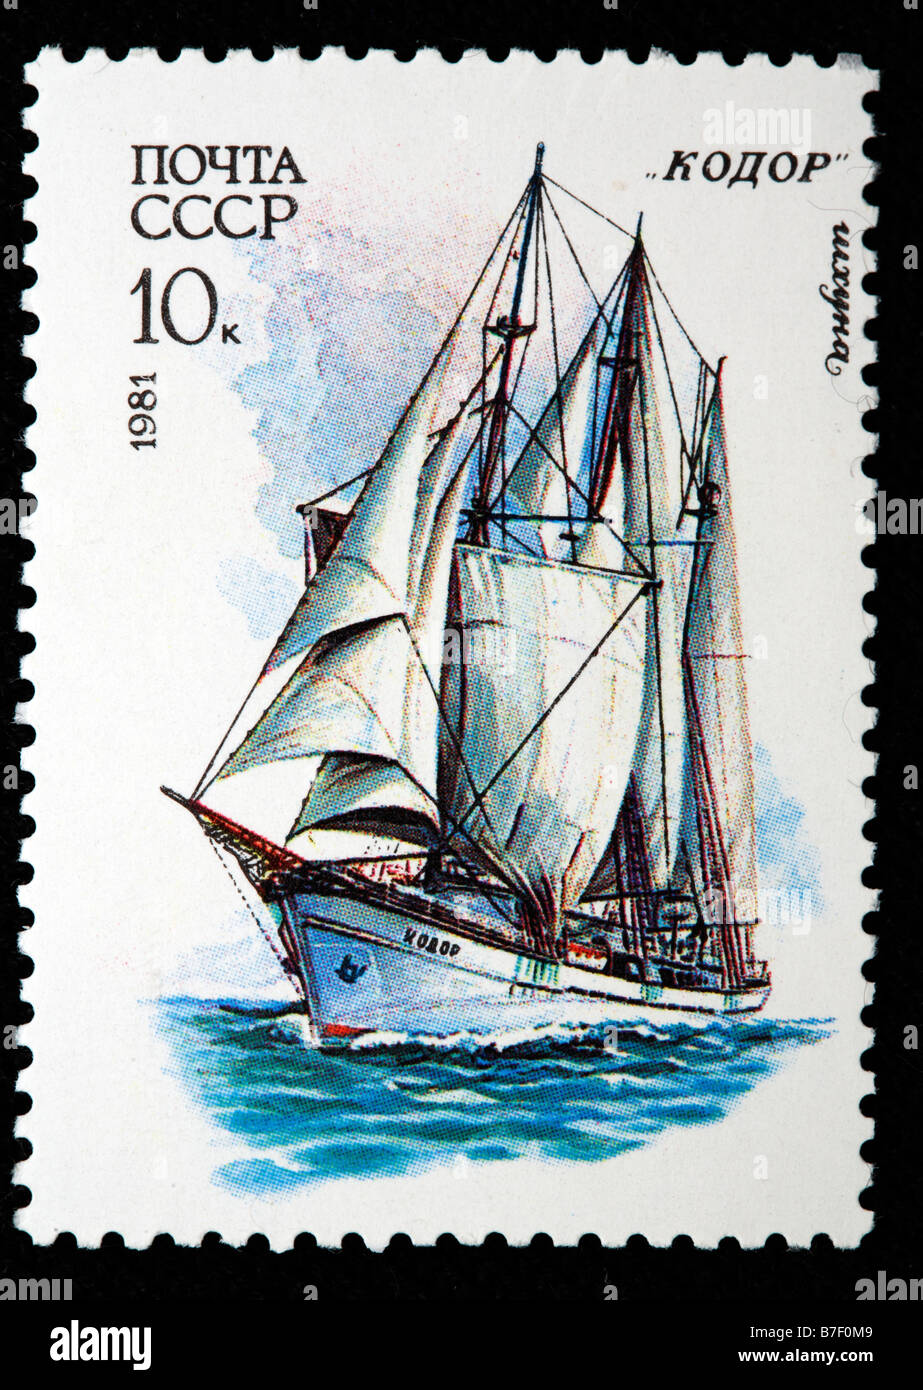 Russische Segelschiff 'Kodori', Briefmarke, UdSSR, Russland, 1981 Stockfoto